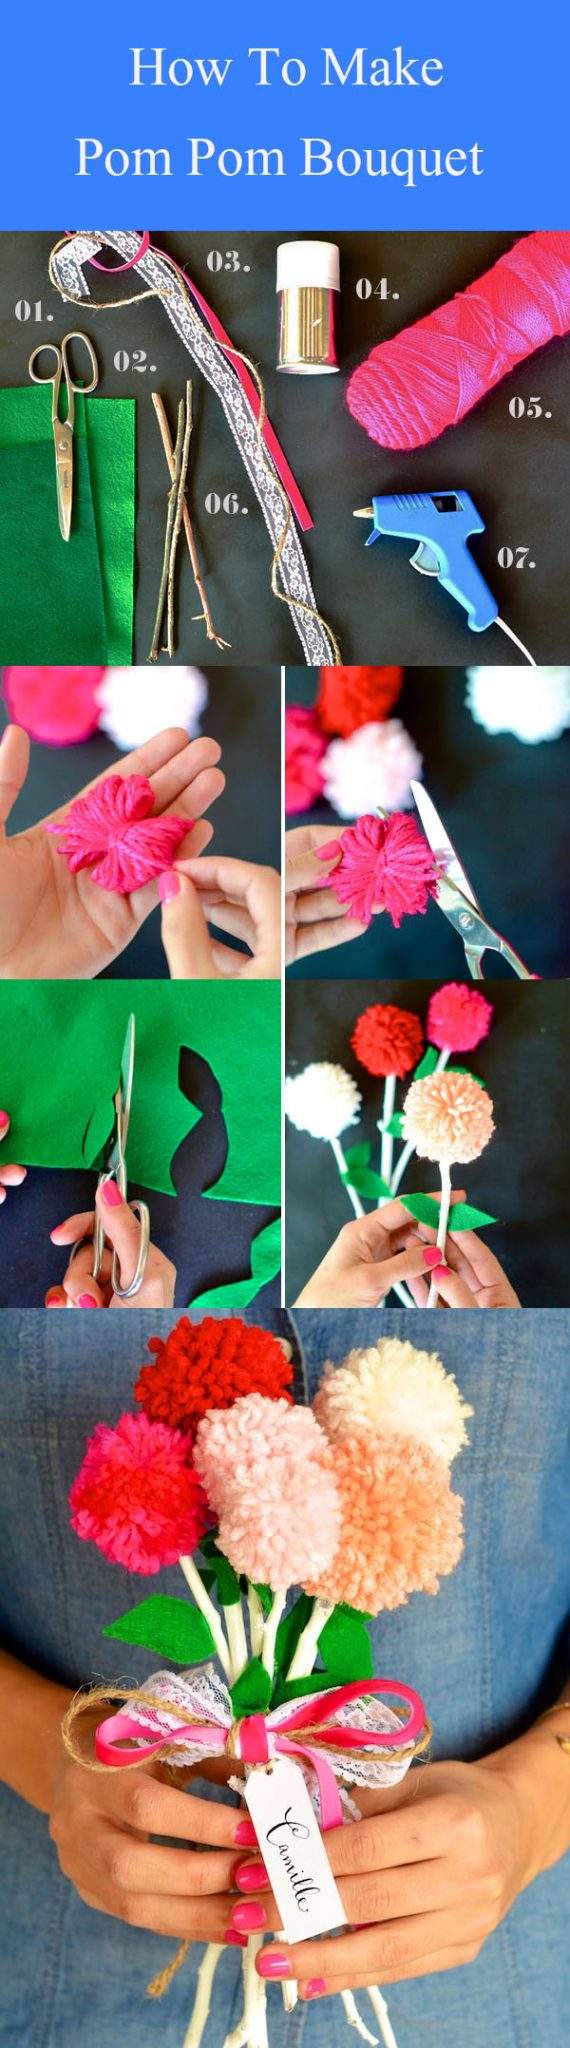 DIY Pom Pom Bouquet